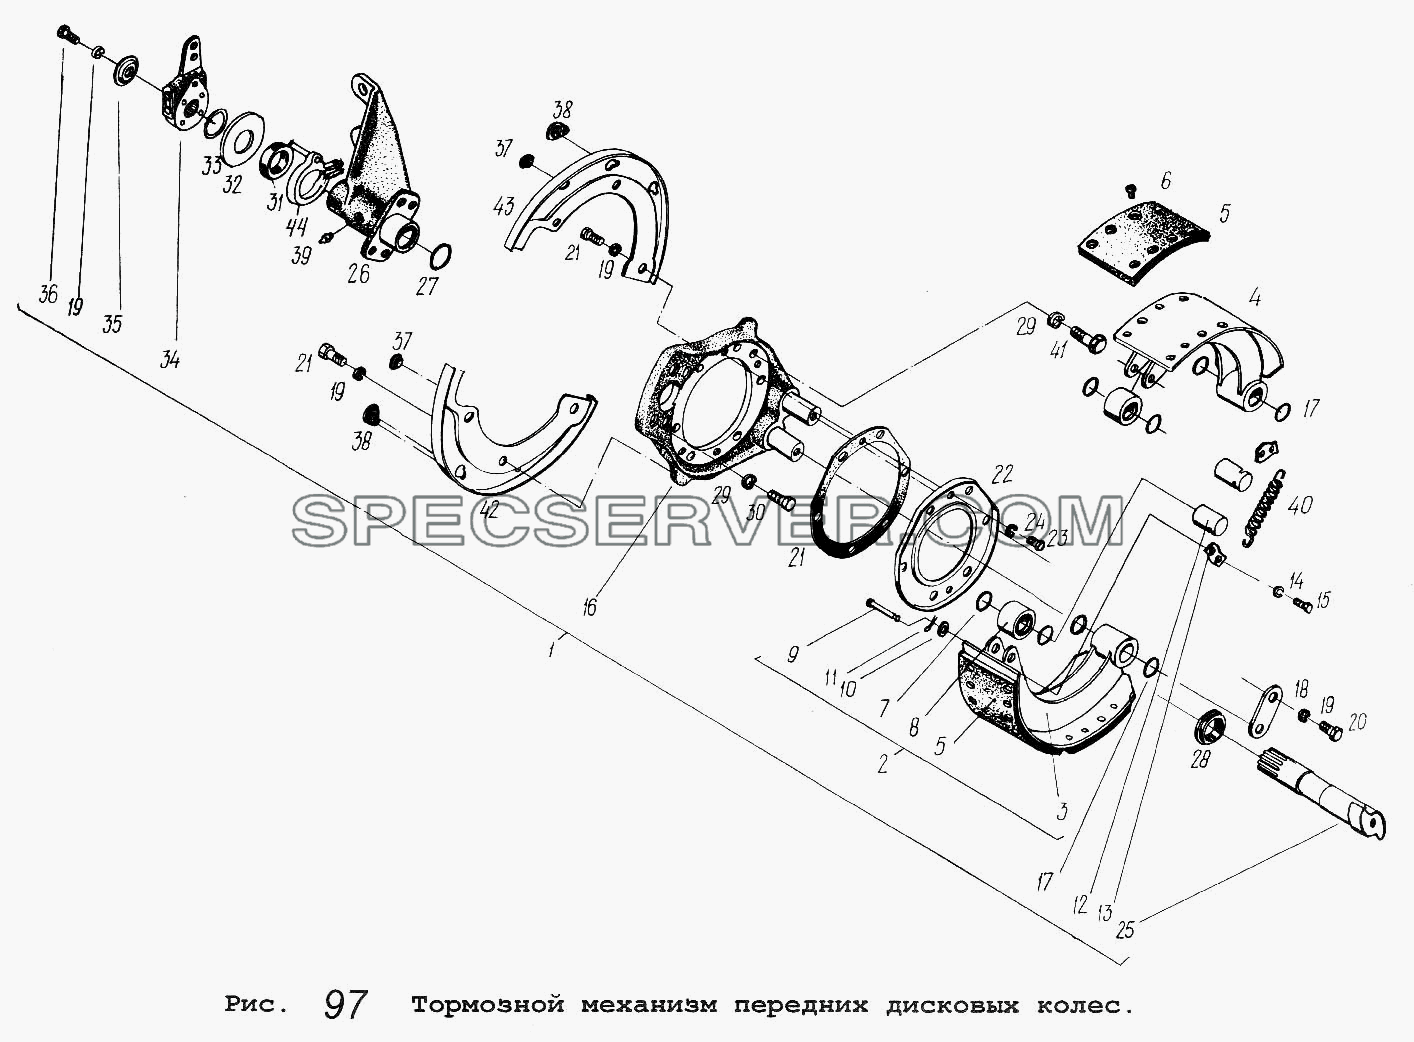 Тормозной механизм передних дисковых колес для МАЗ-5516 (список запасных частей)